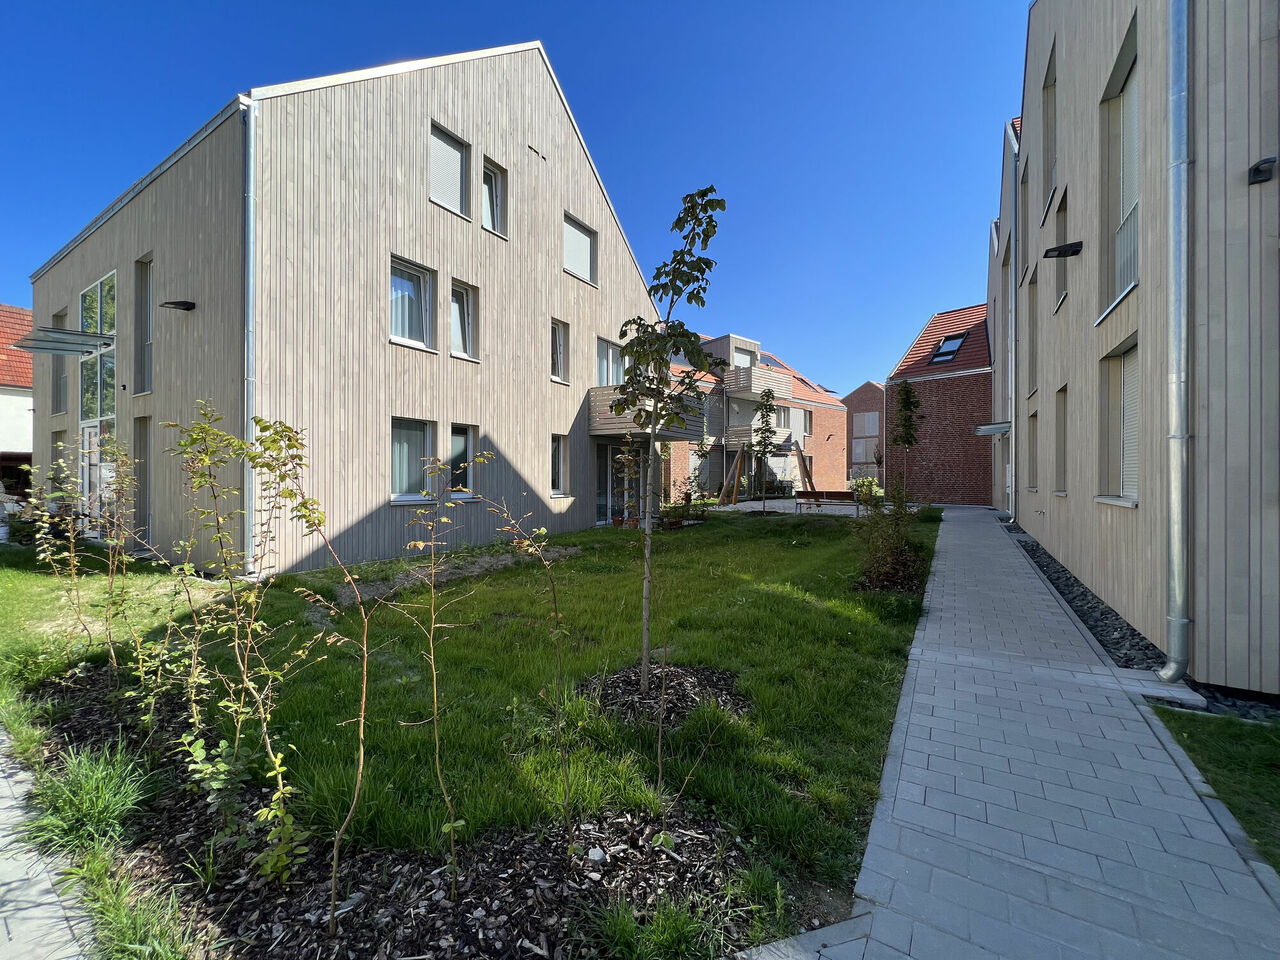 Ingelheim Kirchstrasse Neubau von 10 Wohnhäusern und Tiefgarage